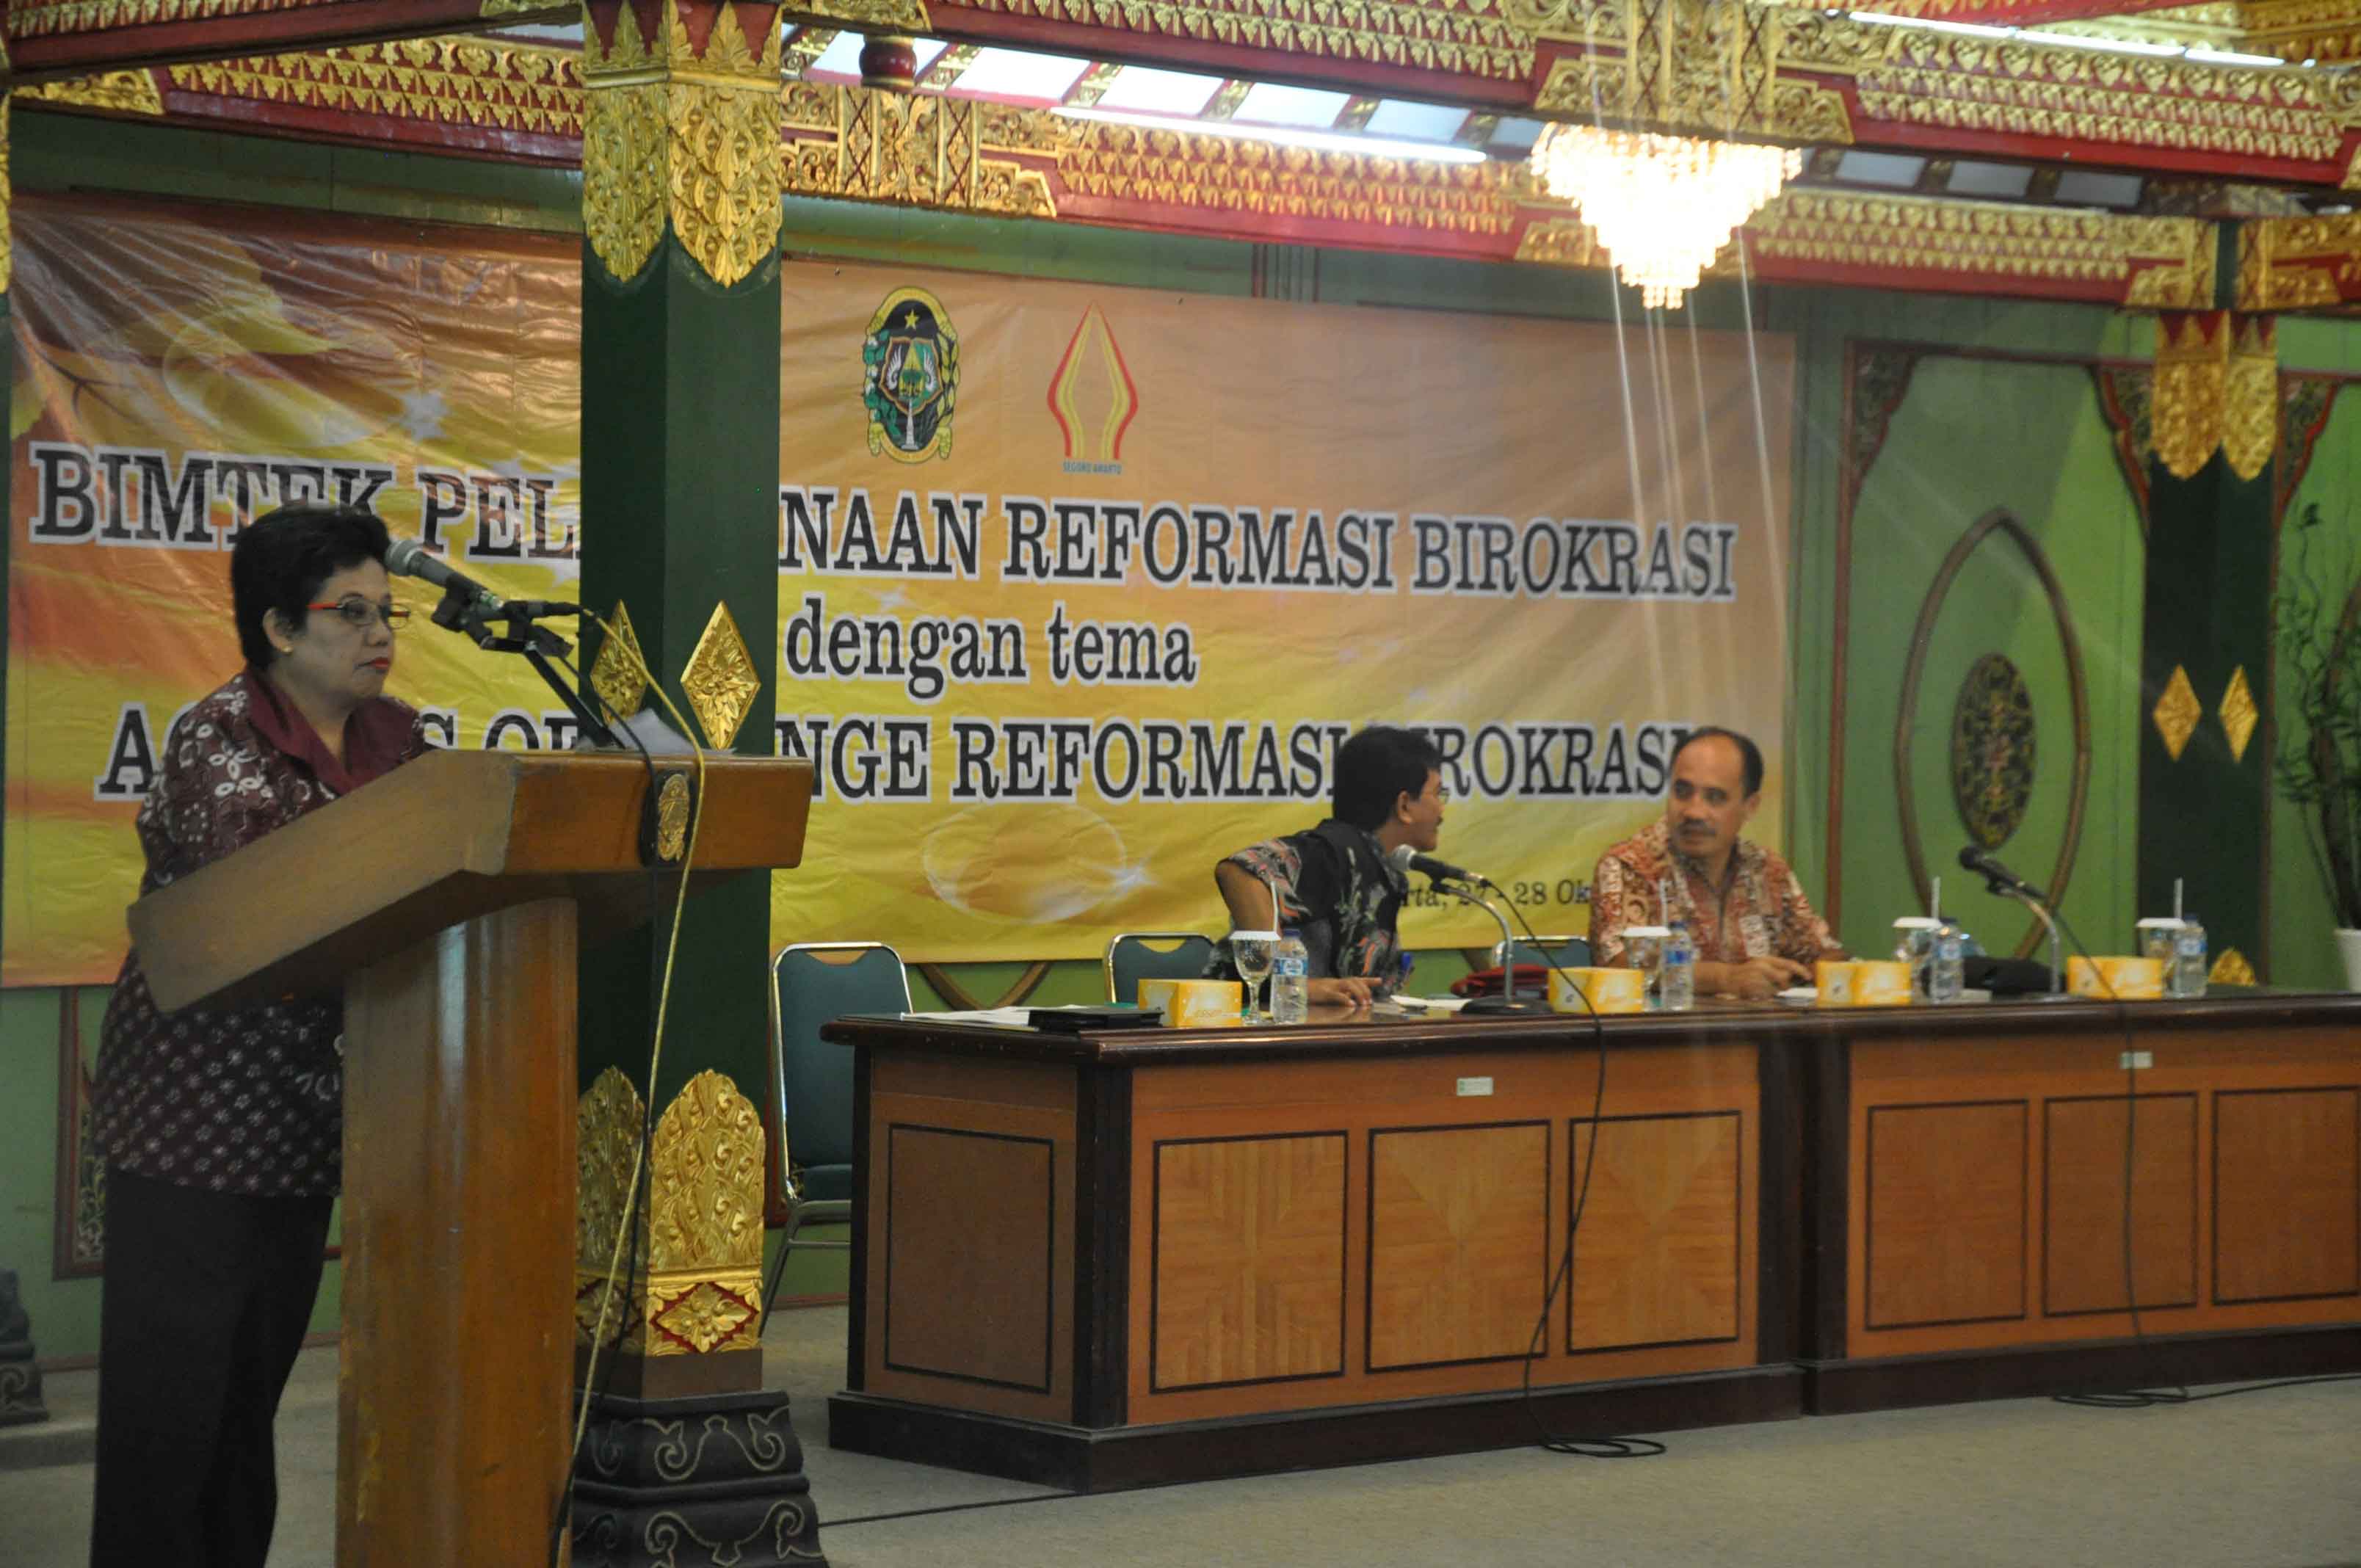  Reformasi Birokrasi Kunci Kemajuan Pemerintahan